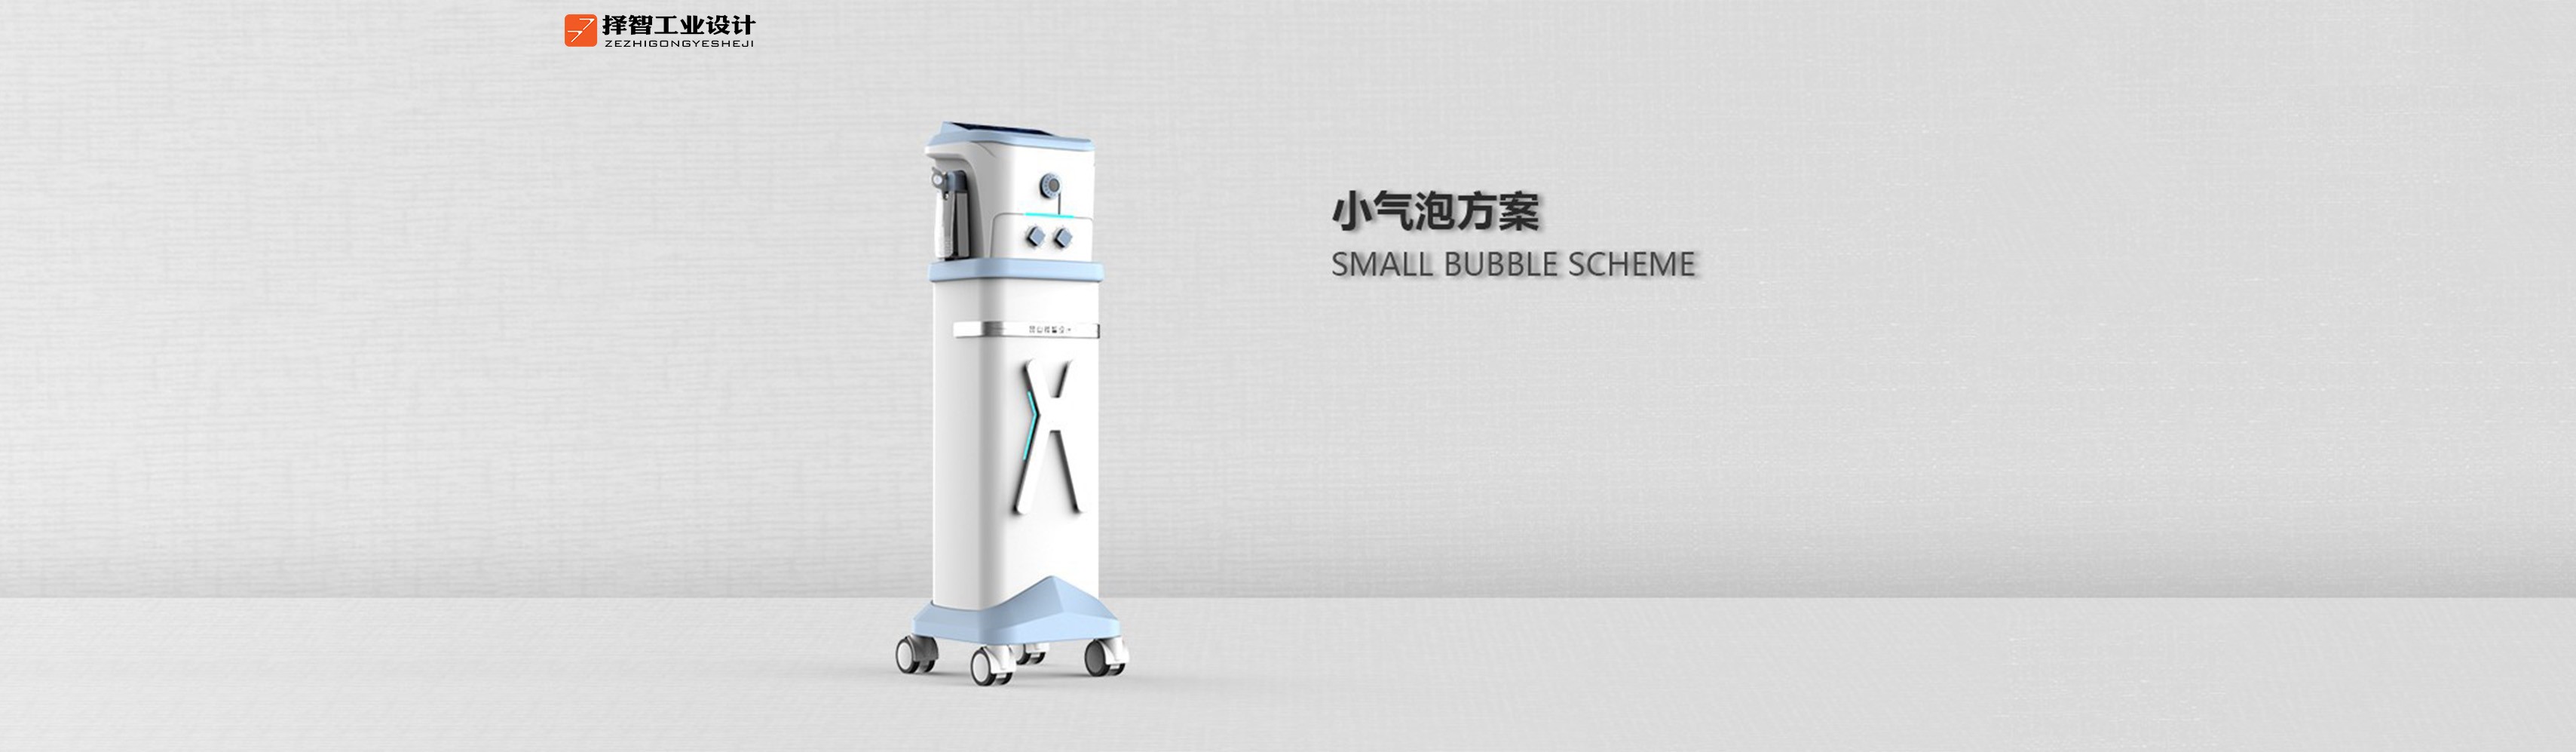 上海苏州产品设计 工业产品外观设计 结构设计 气泡方案美容仪产品设计